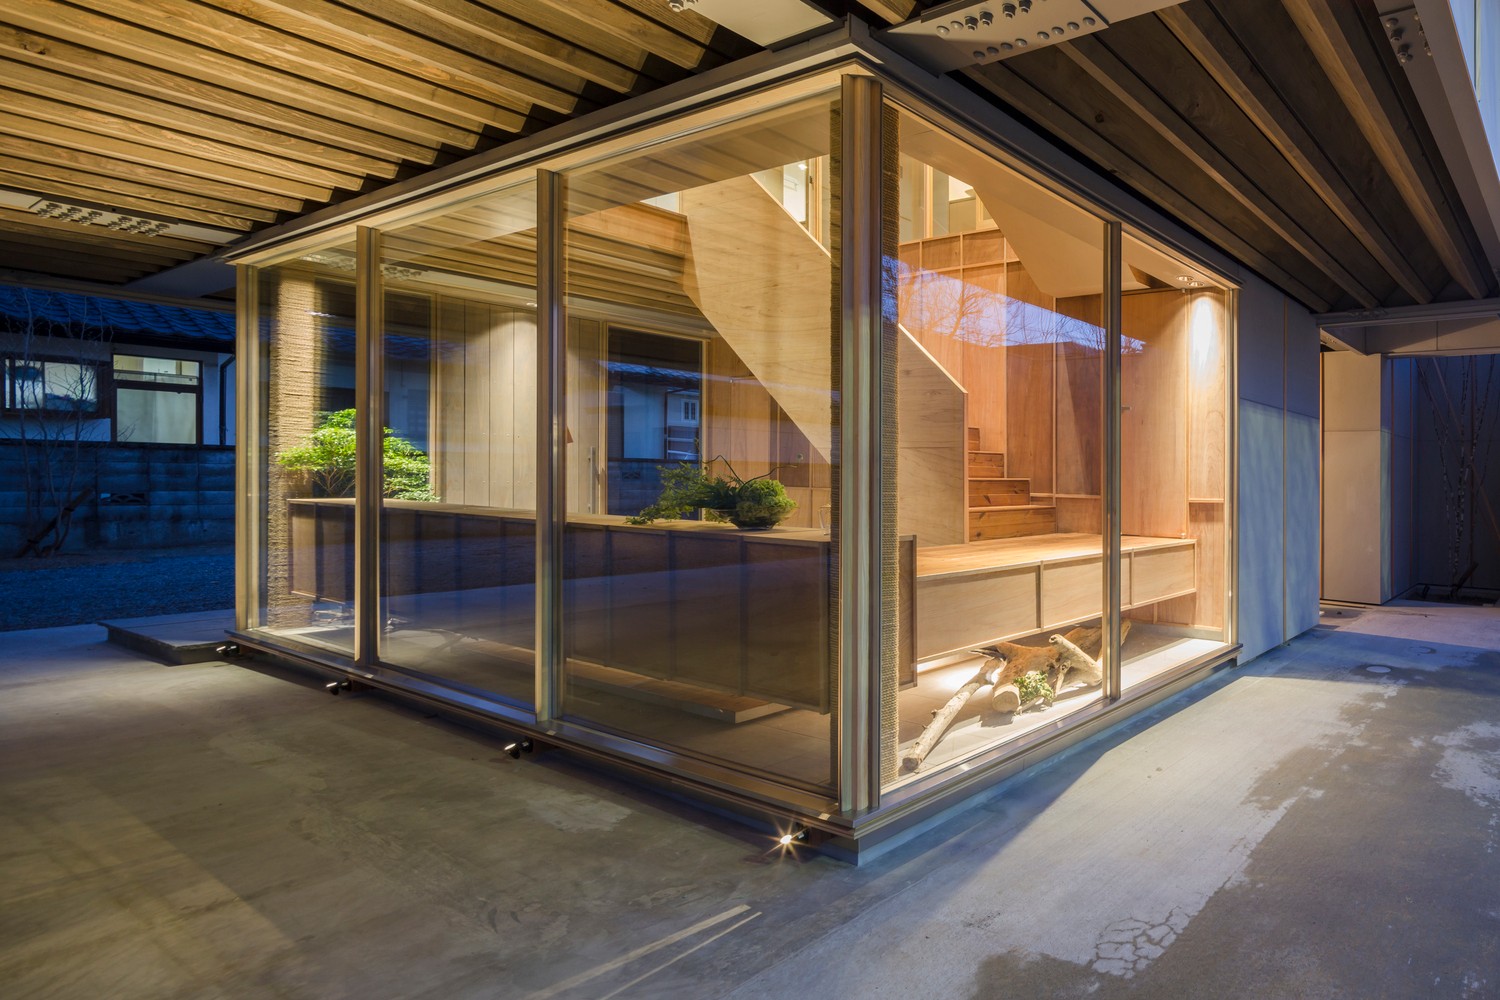 日本福岛混凝土环独立住宅建筑设计/Life Style Koubou